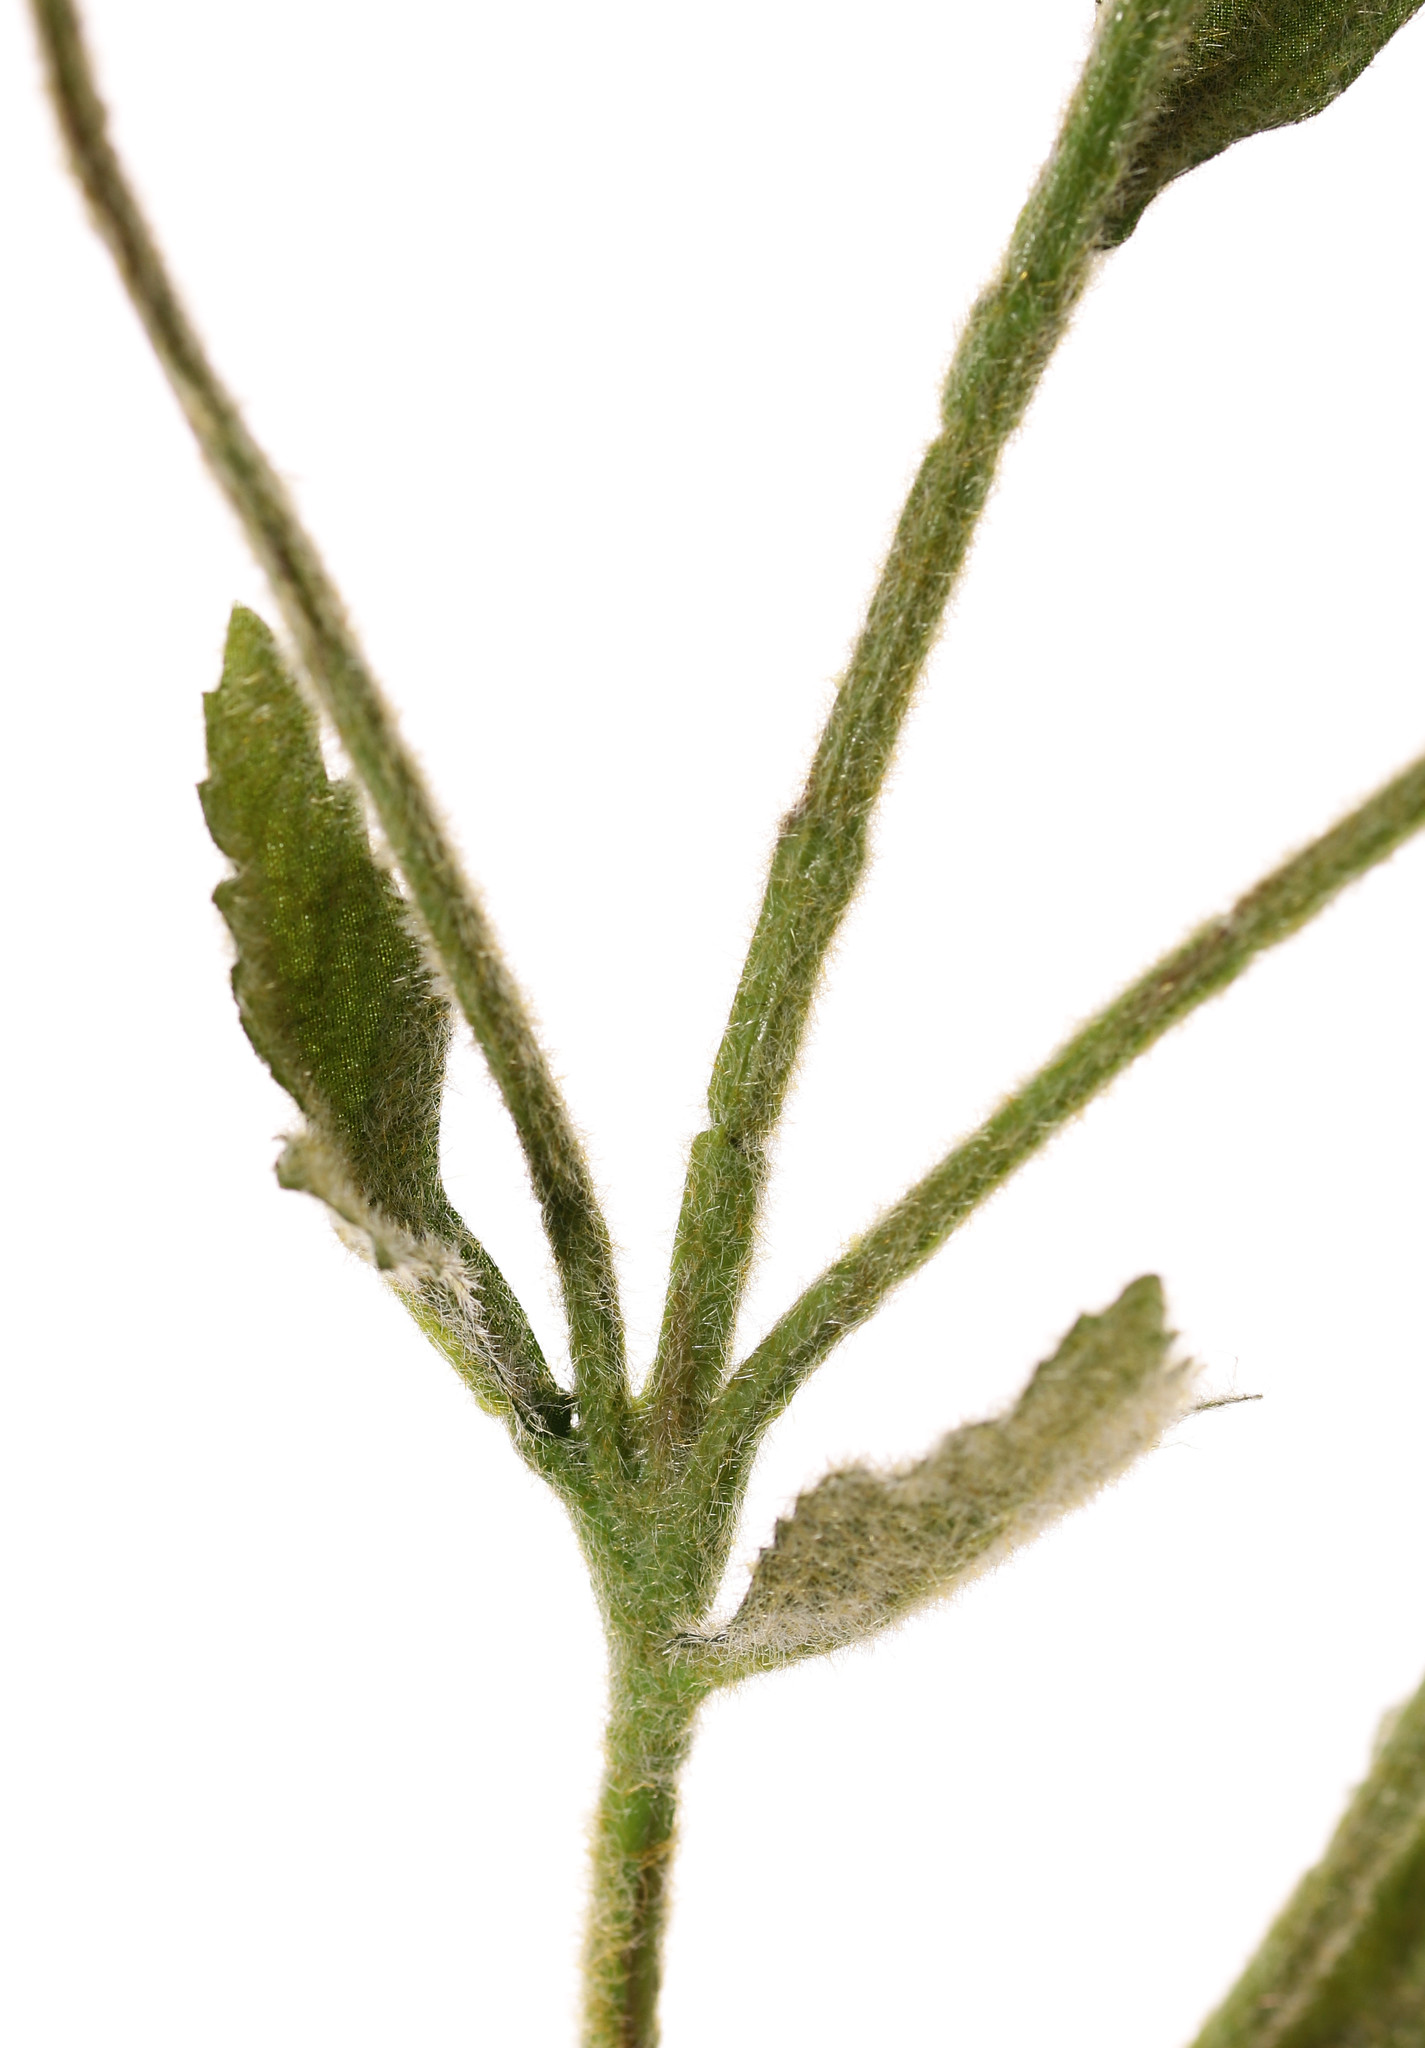 Kardeboltak (Dipsacus) 5 vertakkingen, 5 kaardebollen & 5 blad, geheel behaard, 90cm